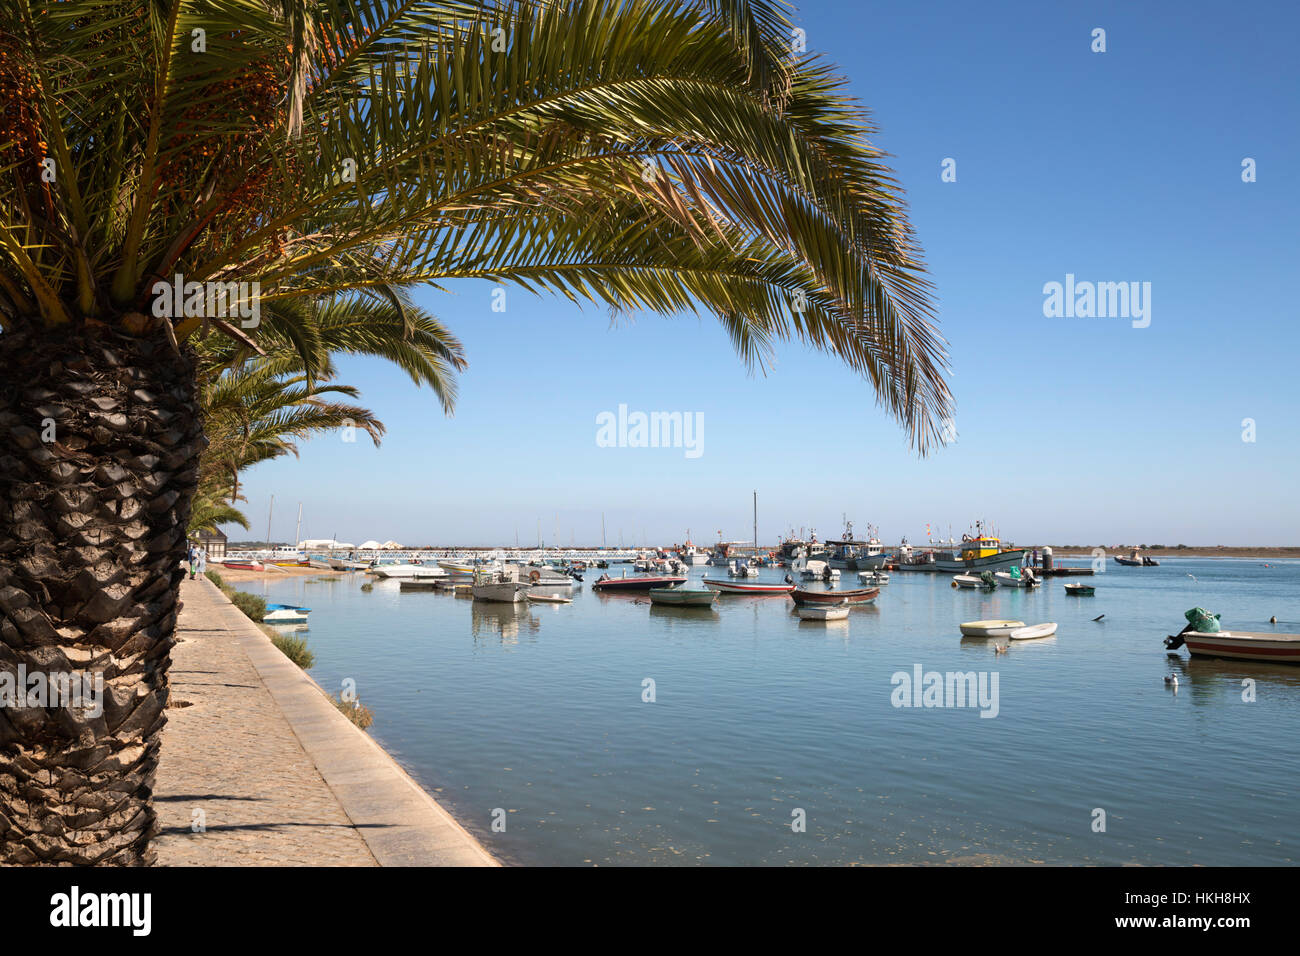 Paseo marítimo cubierto de palmeras de pueblo pesquero conocido como capital de pulpo (capital do polvo), Santa Luzia, Algarve, Portugal, Europa Foto de stock